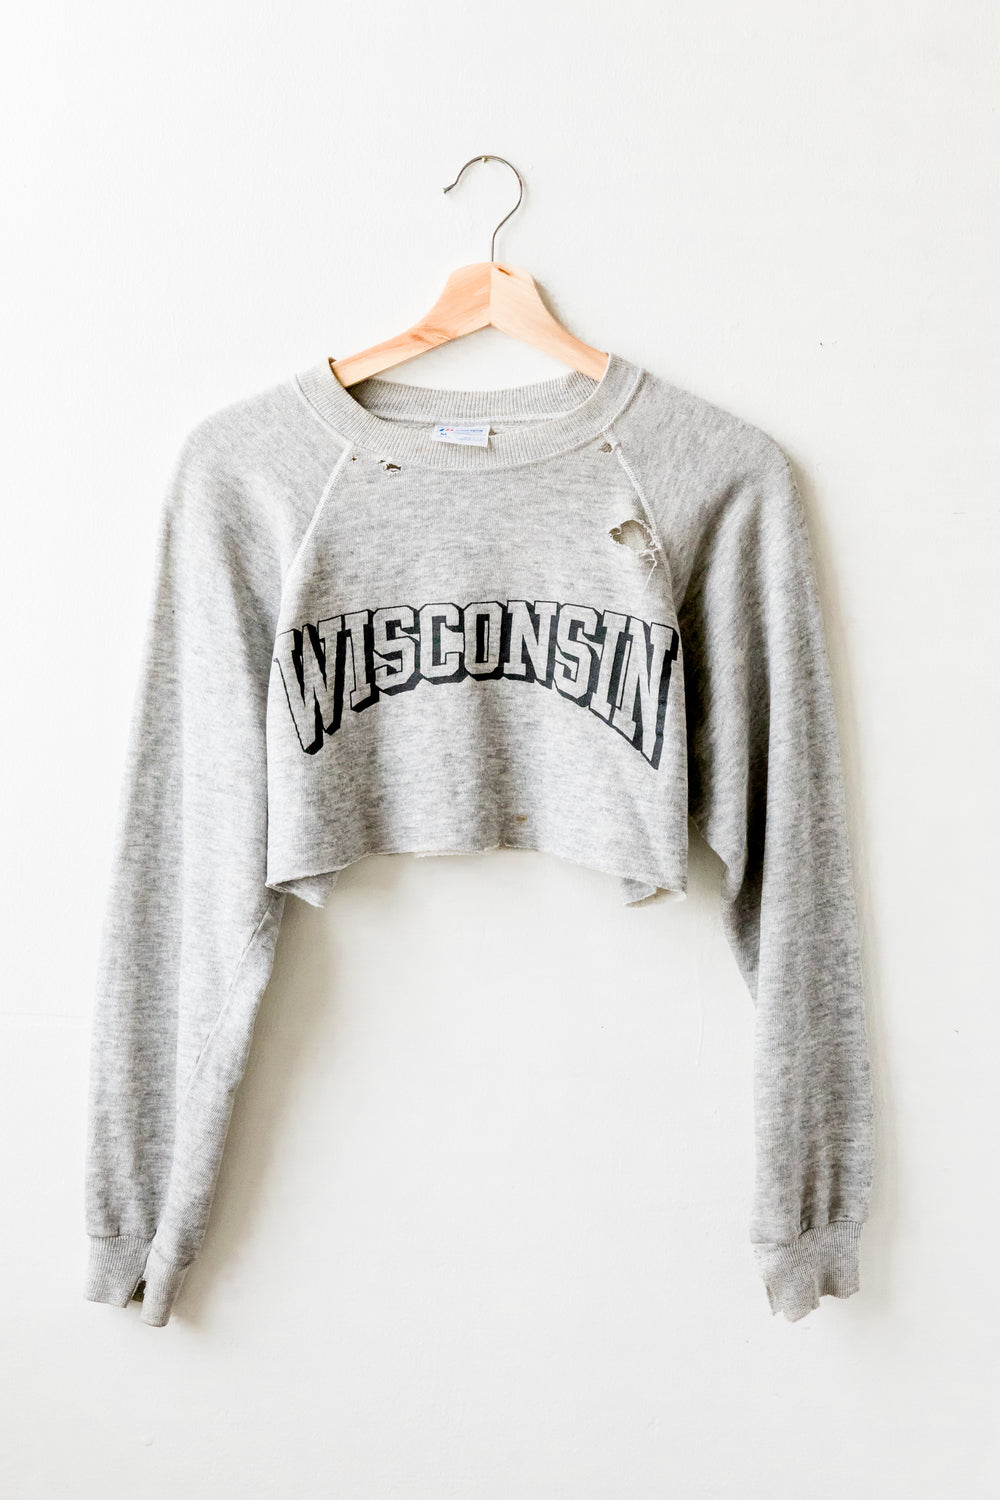 Wisconsin Crop Sweatshirt